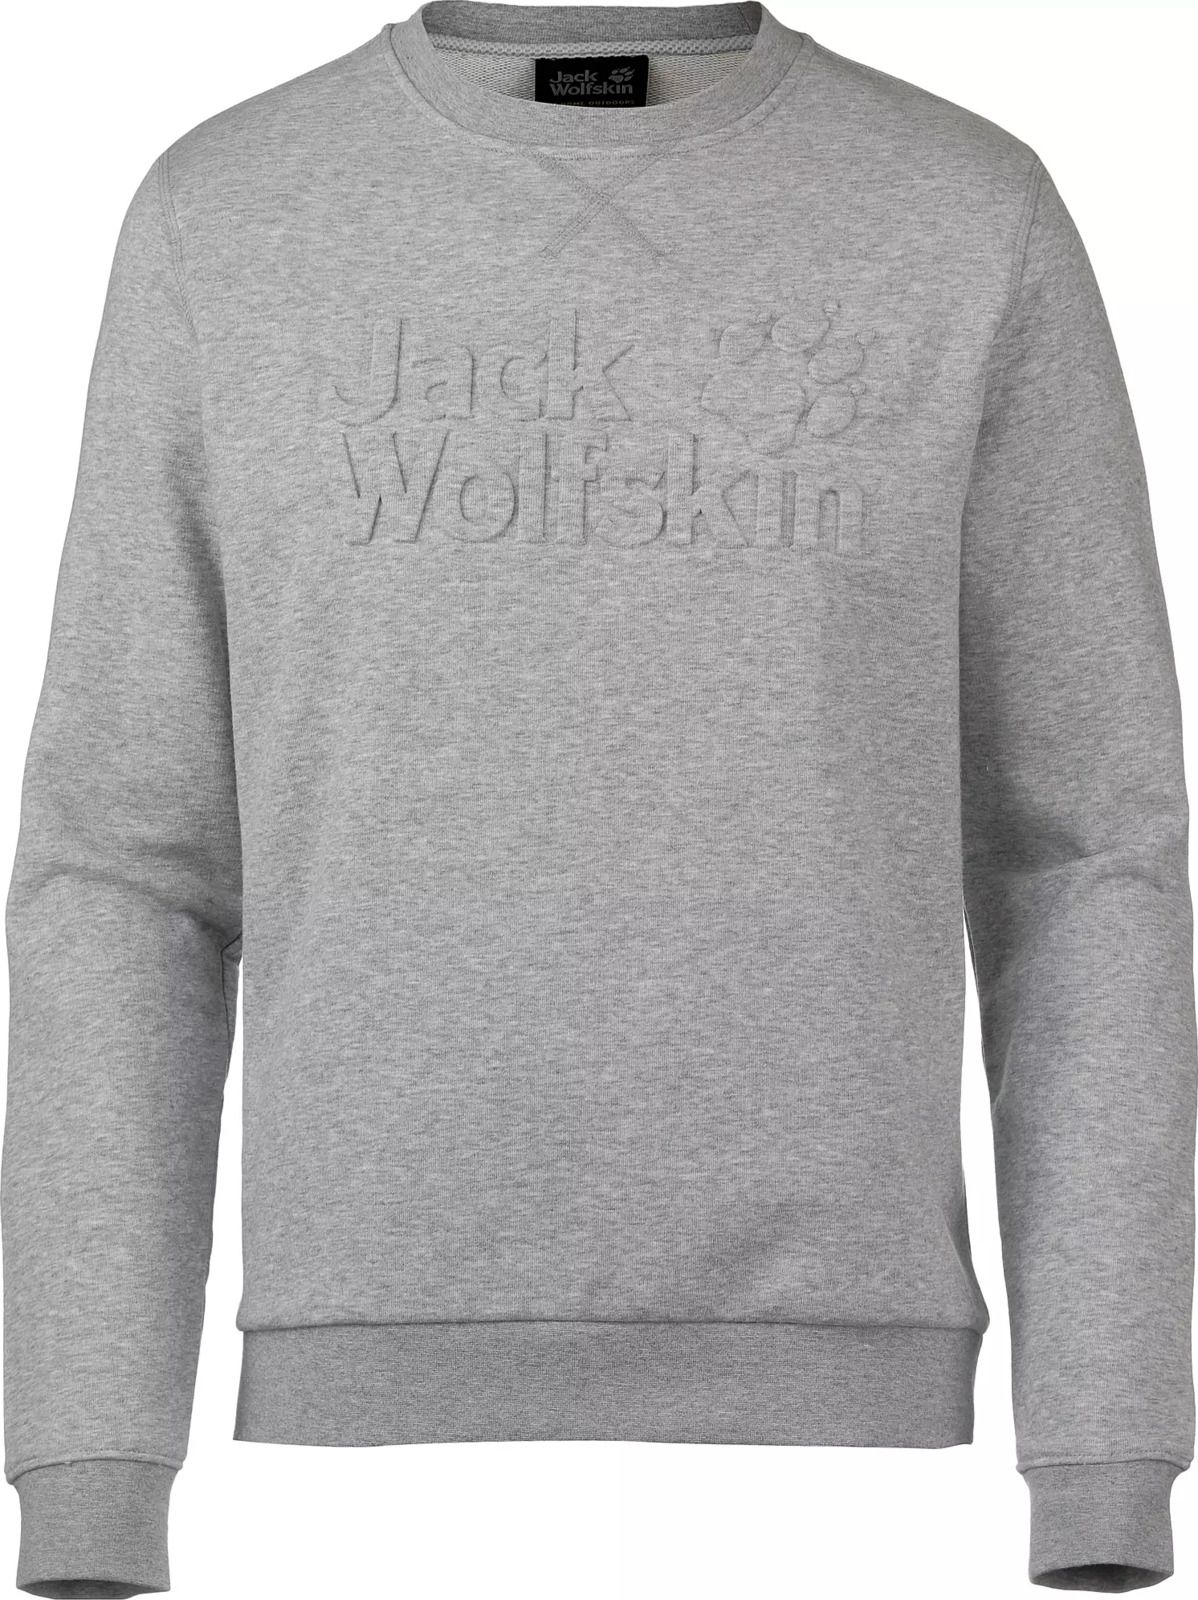   Jack Wolfskin Logo Sweatshirt M, : -. 5018891-6111.  XL (52)